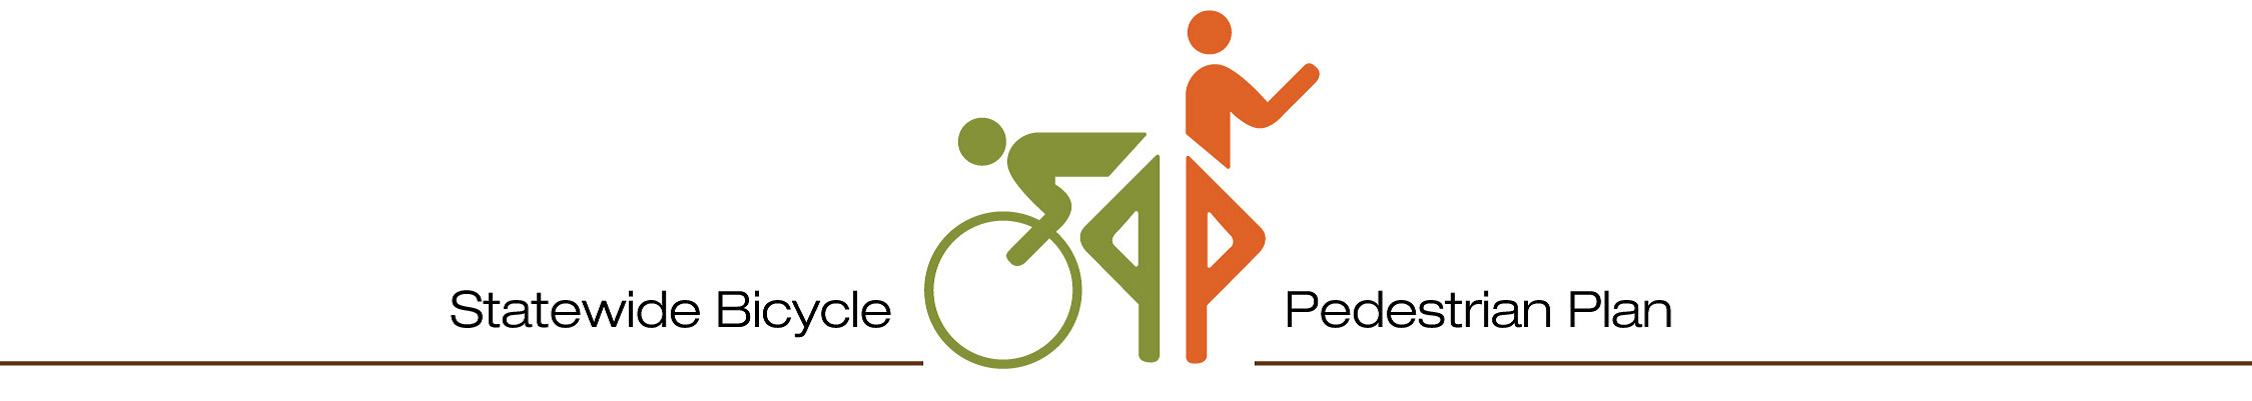 Statewide Bicycle Pedestrian Plan detail image